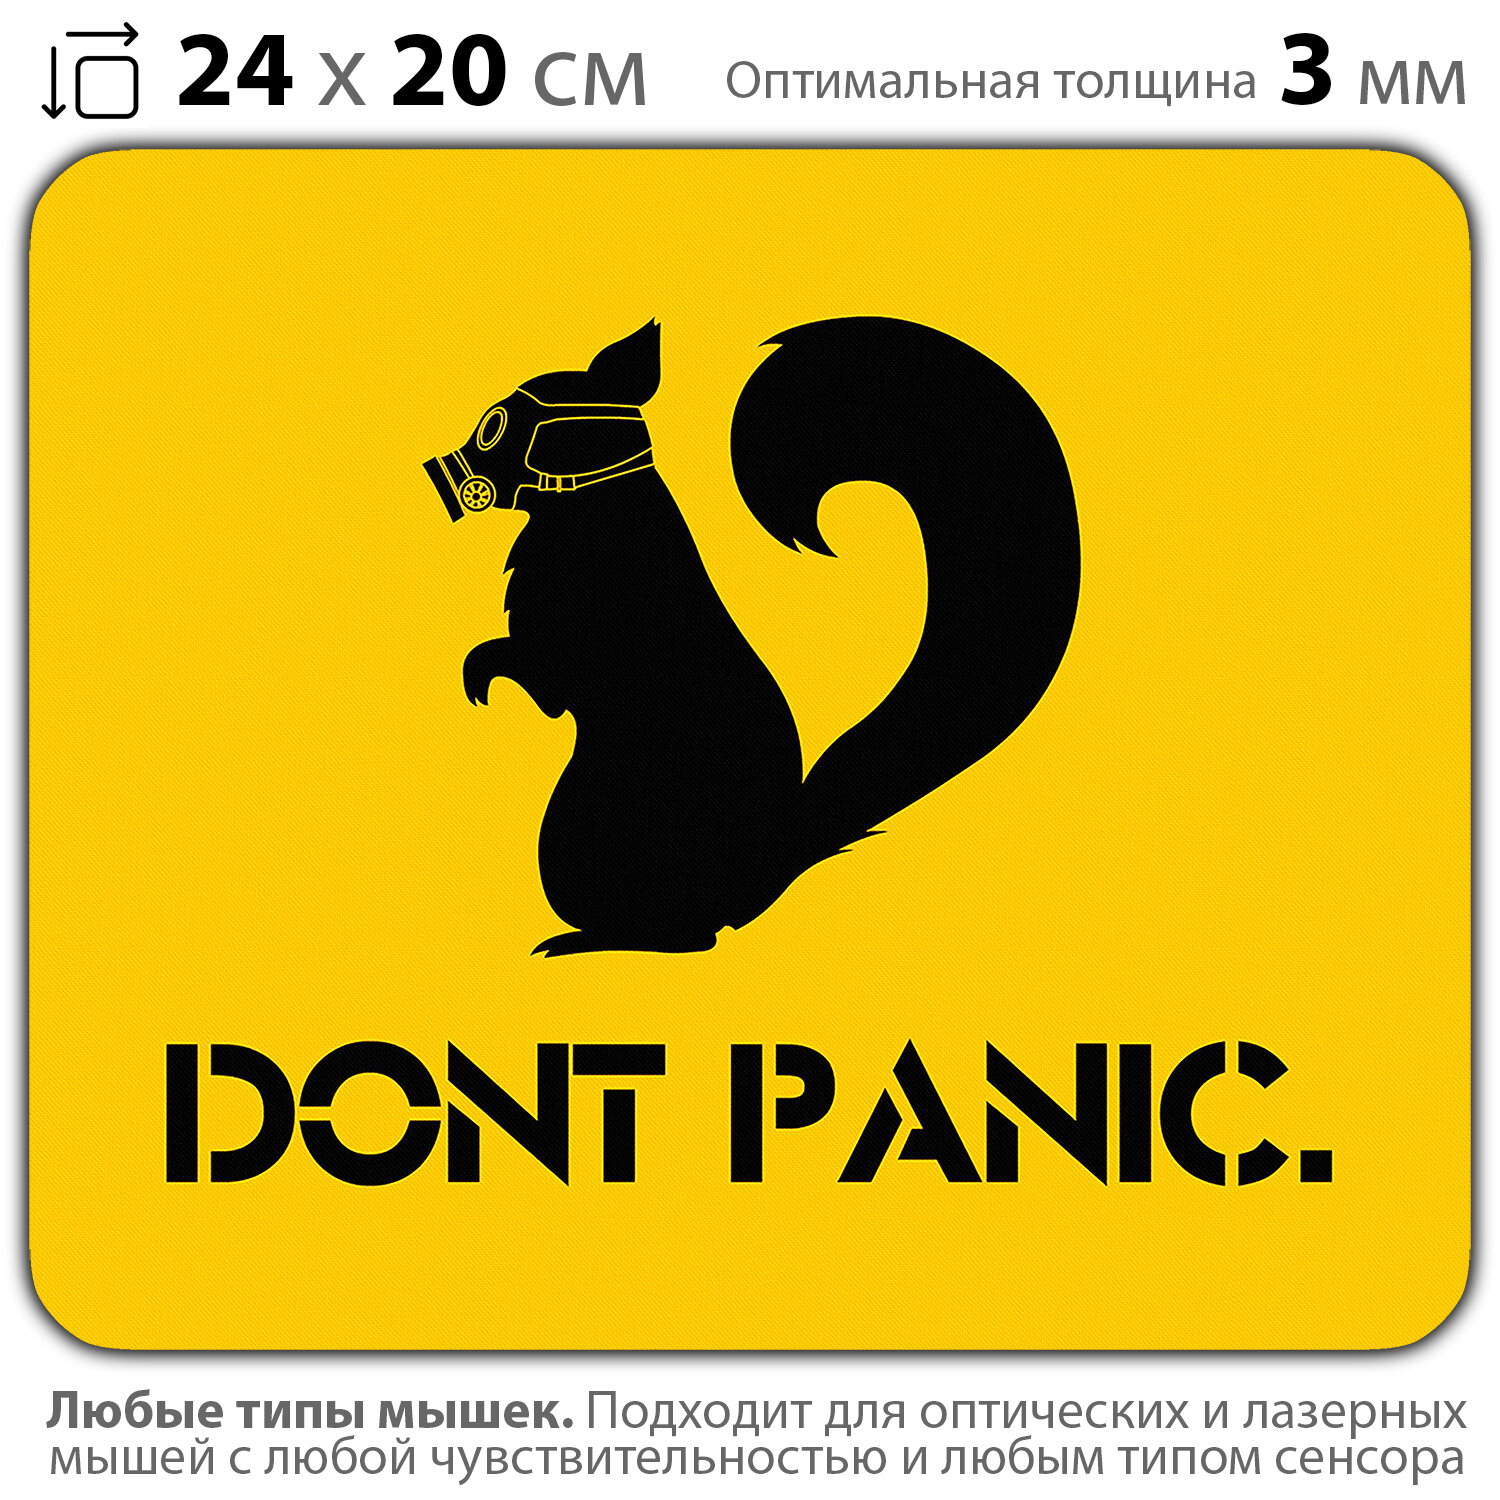 Коврик для мыши "Без паники" (24 x 20 см x 3 мм)